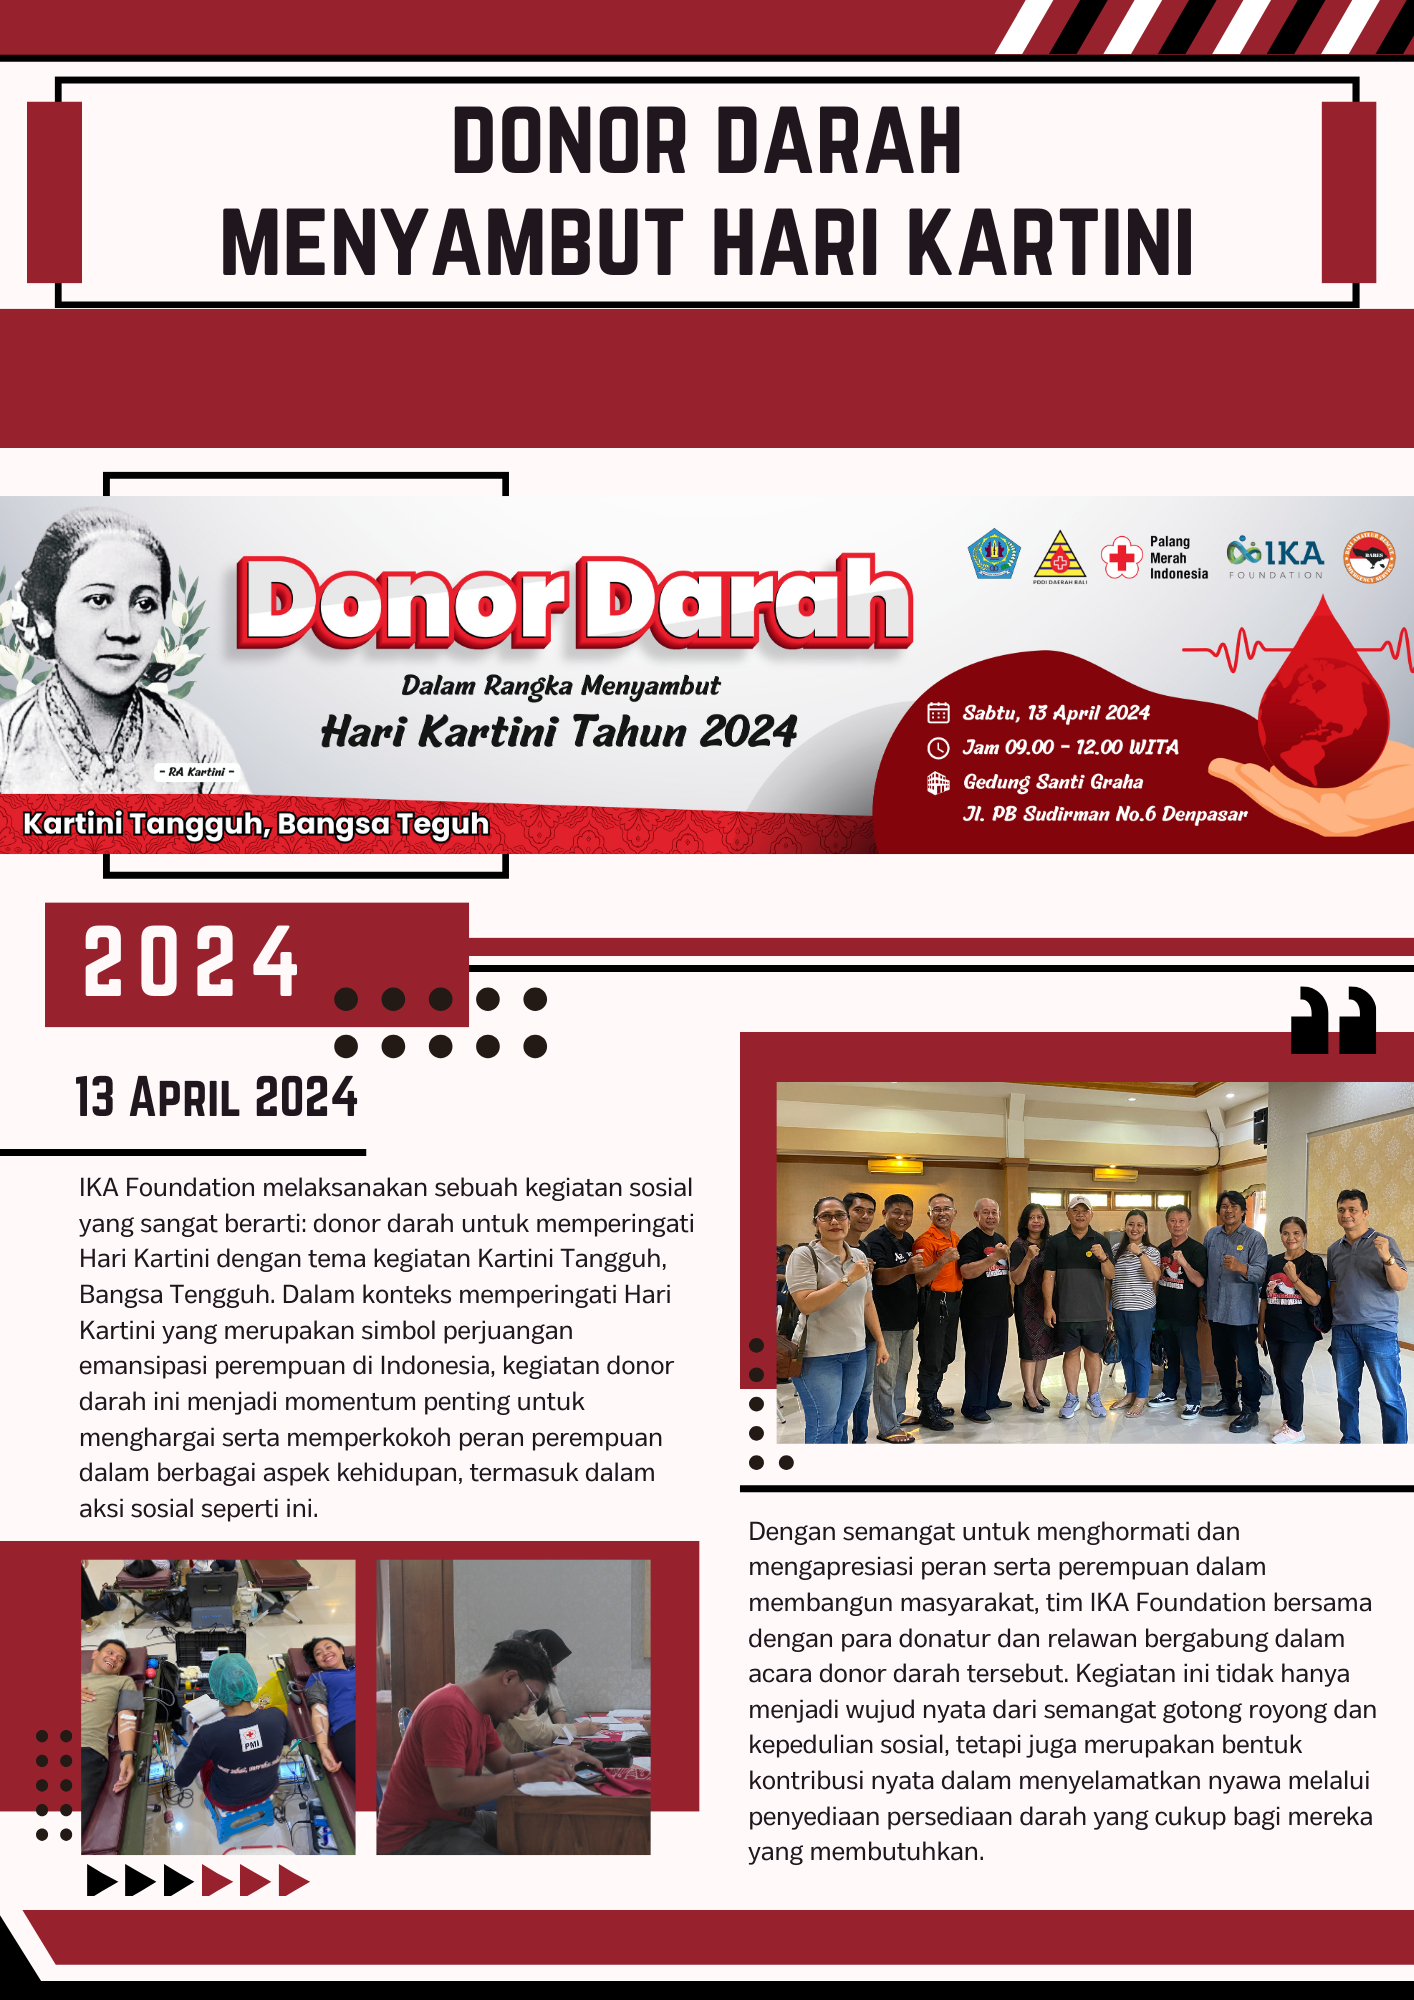 Laporan Kegiatan: Donor Darah “Hari Kartini 2024”